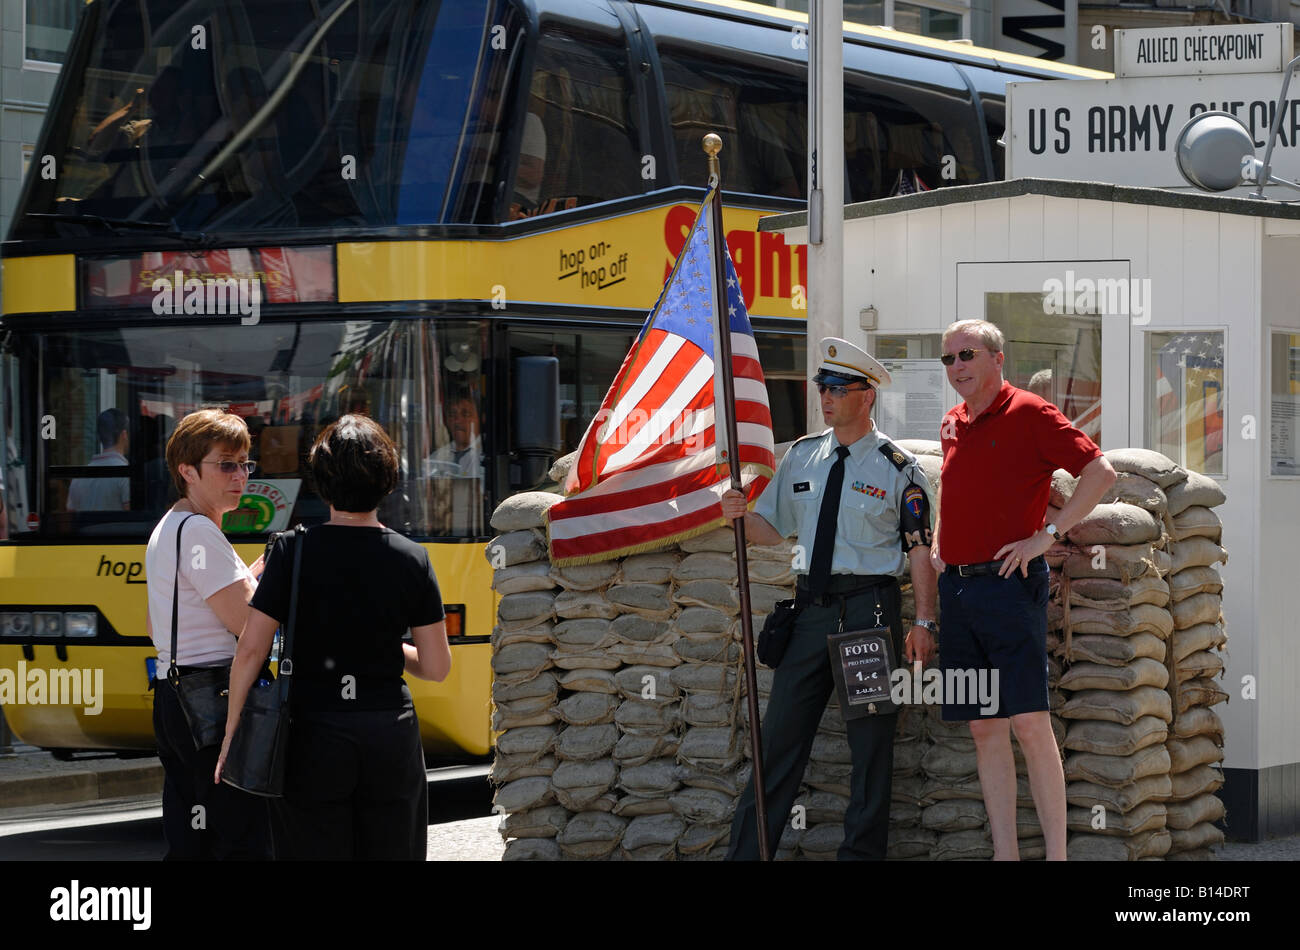 Berlino. Il Checkpoint Charlie oggi. Le forze alleate di frontiera del punto di controllo. Attore come soldato americano in posa con i turisti. Foto Stock